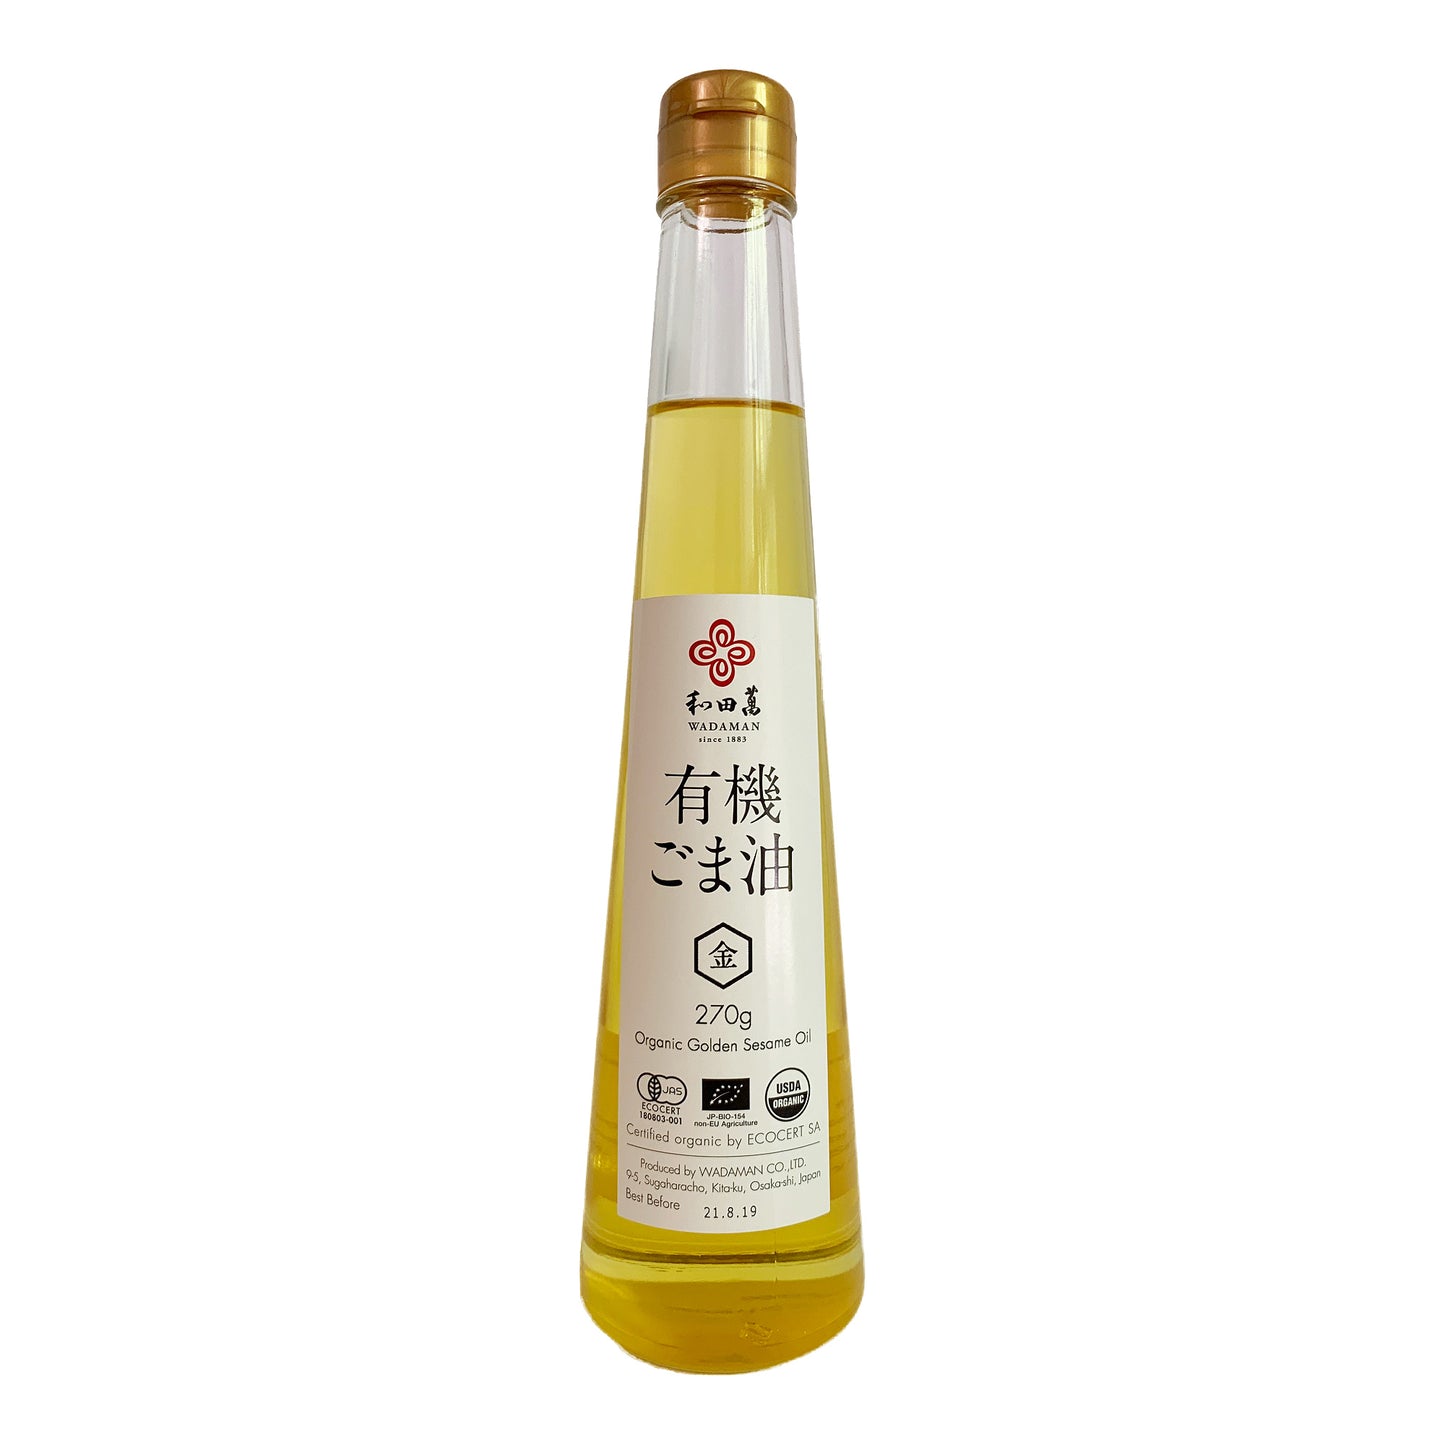 WADAMAN Organic Golden Sesame Oil 300ml